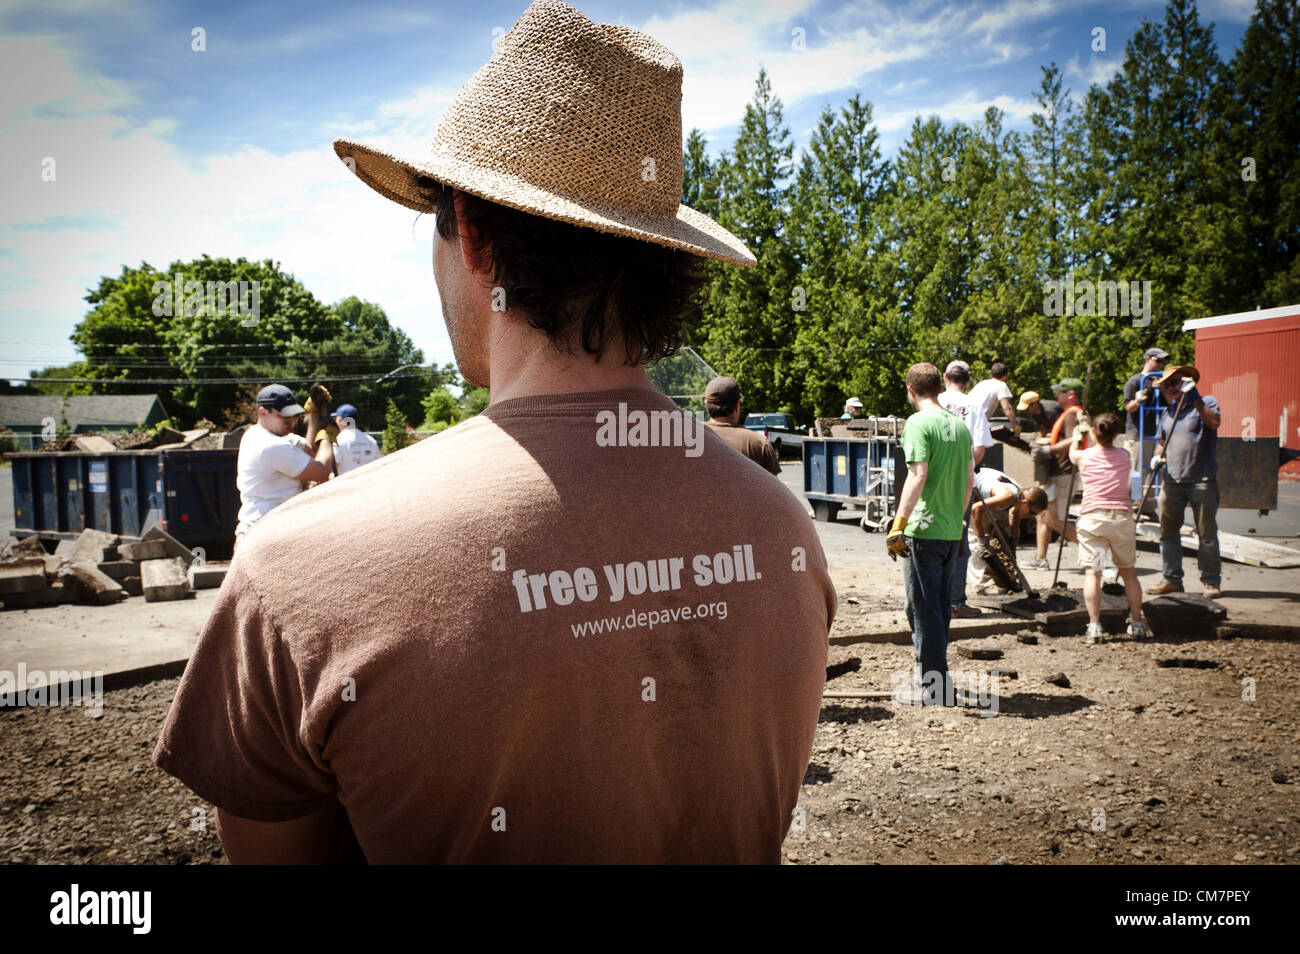 9 luglio 2011 - La depave mottoâ€¦'"libera il tuo suolo" (credito Immagine: © Ken Hawkins/ZUMAPRESS.com) Foto Stock